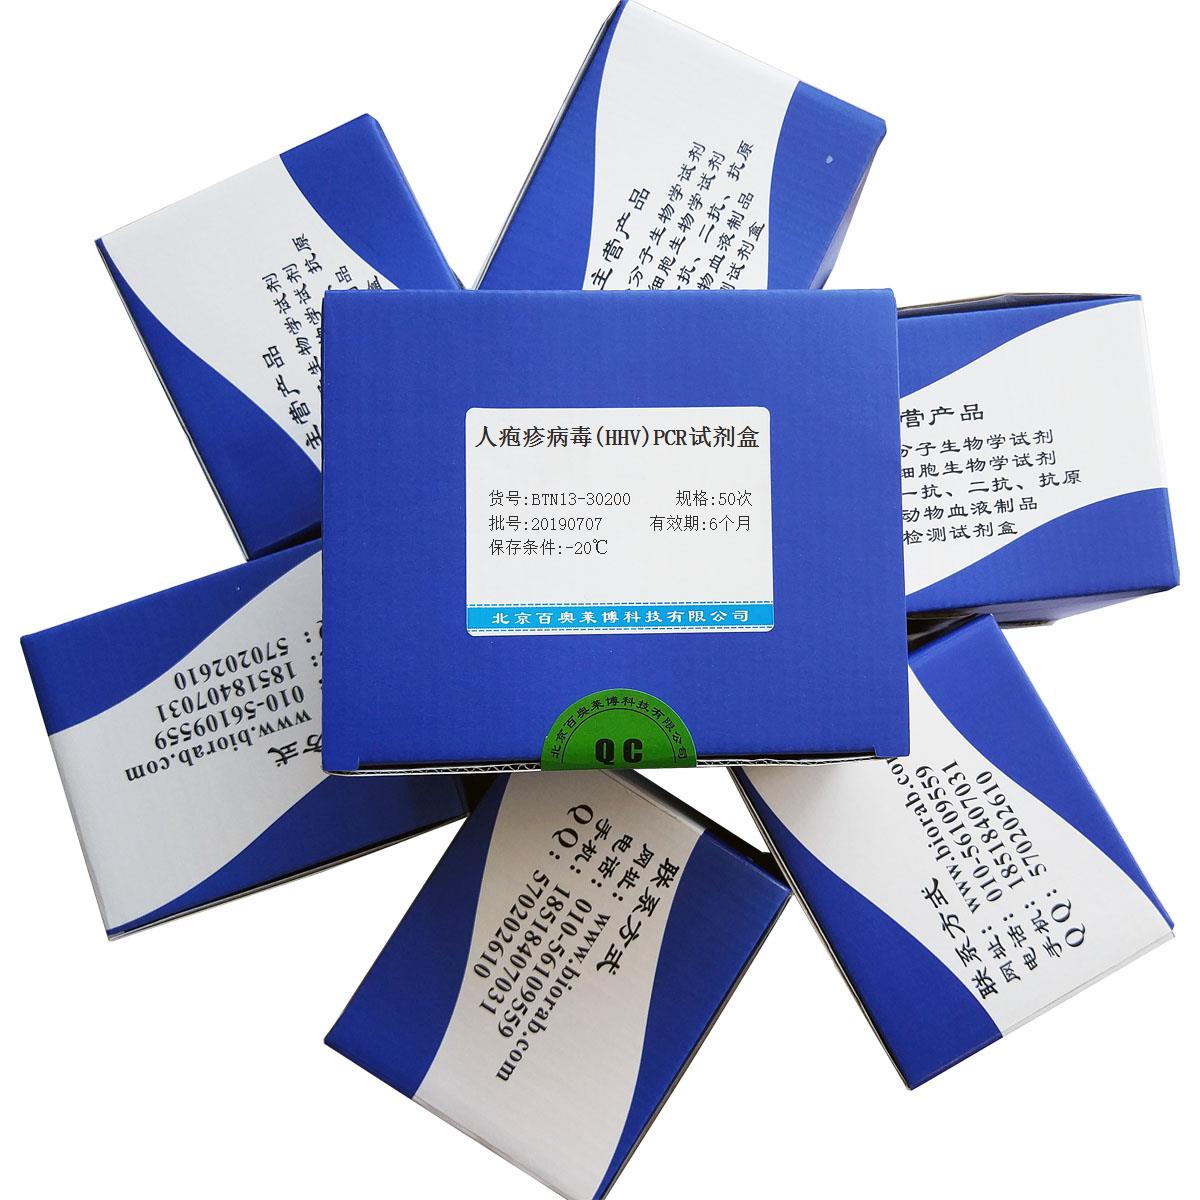 人疱疹病毒(HHV)PCR试剂盒优惠促销